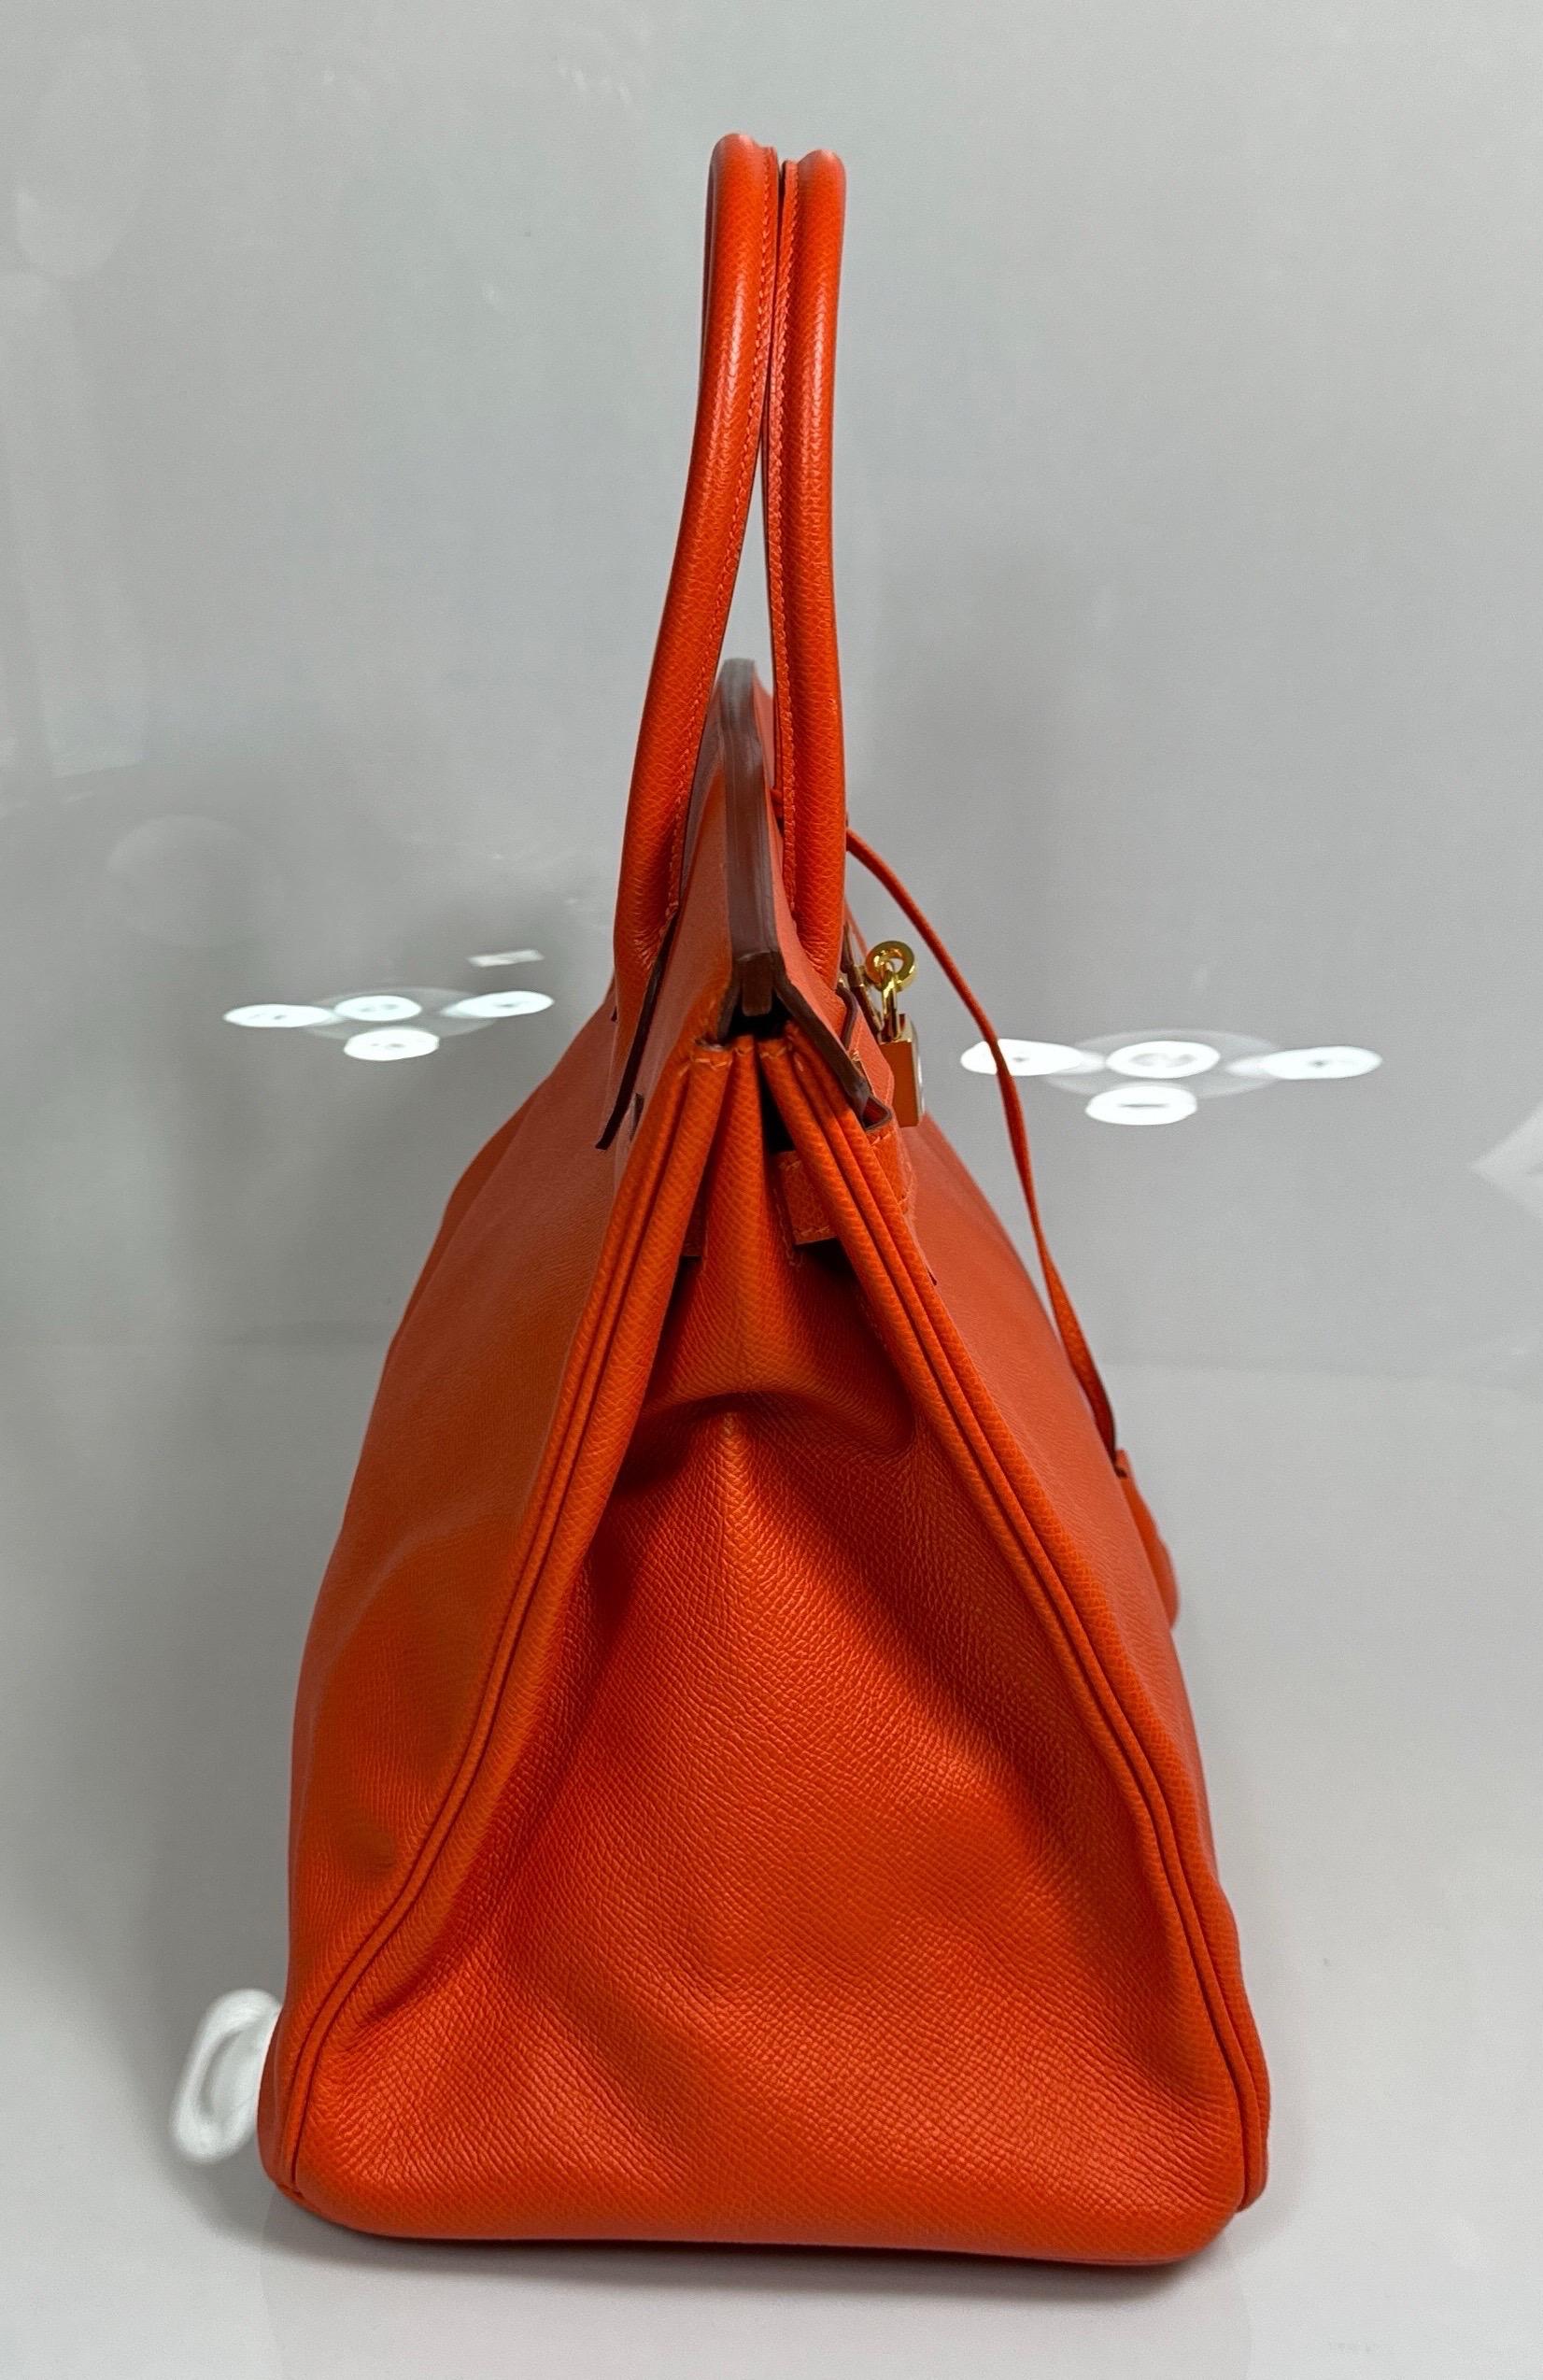 Hermes Orange Togo 35cm Birkin - 2016 - GHW - NEW NEVER CARRIED For Sale 1